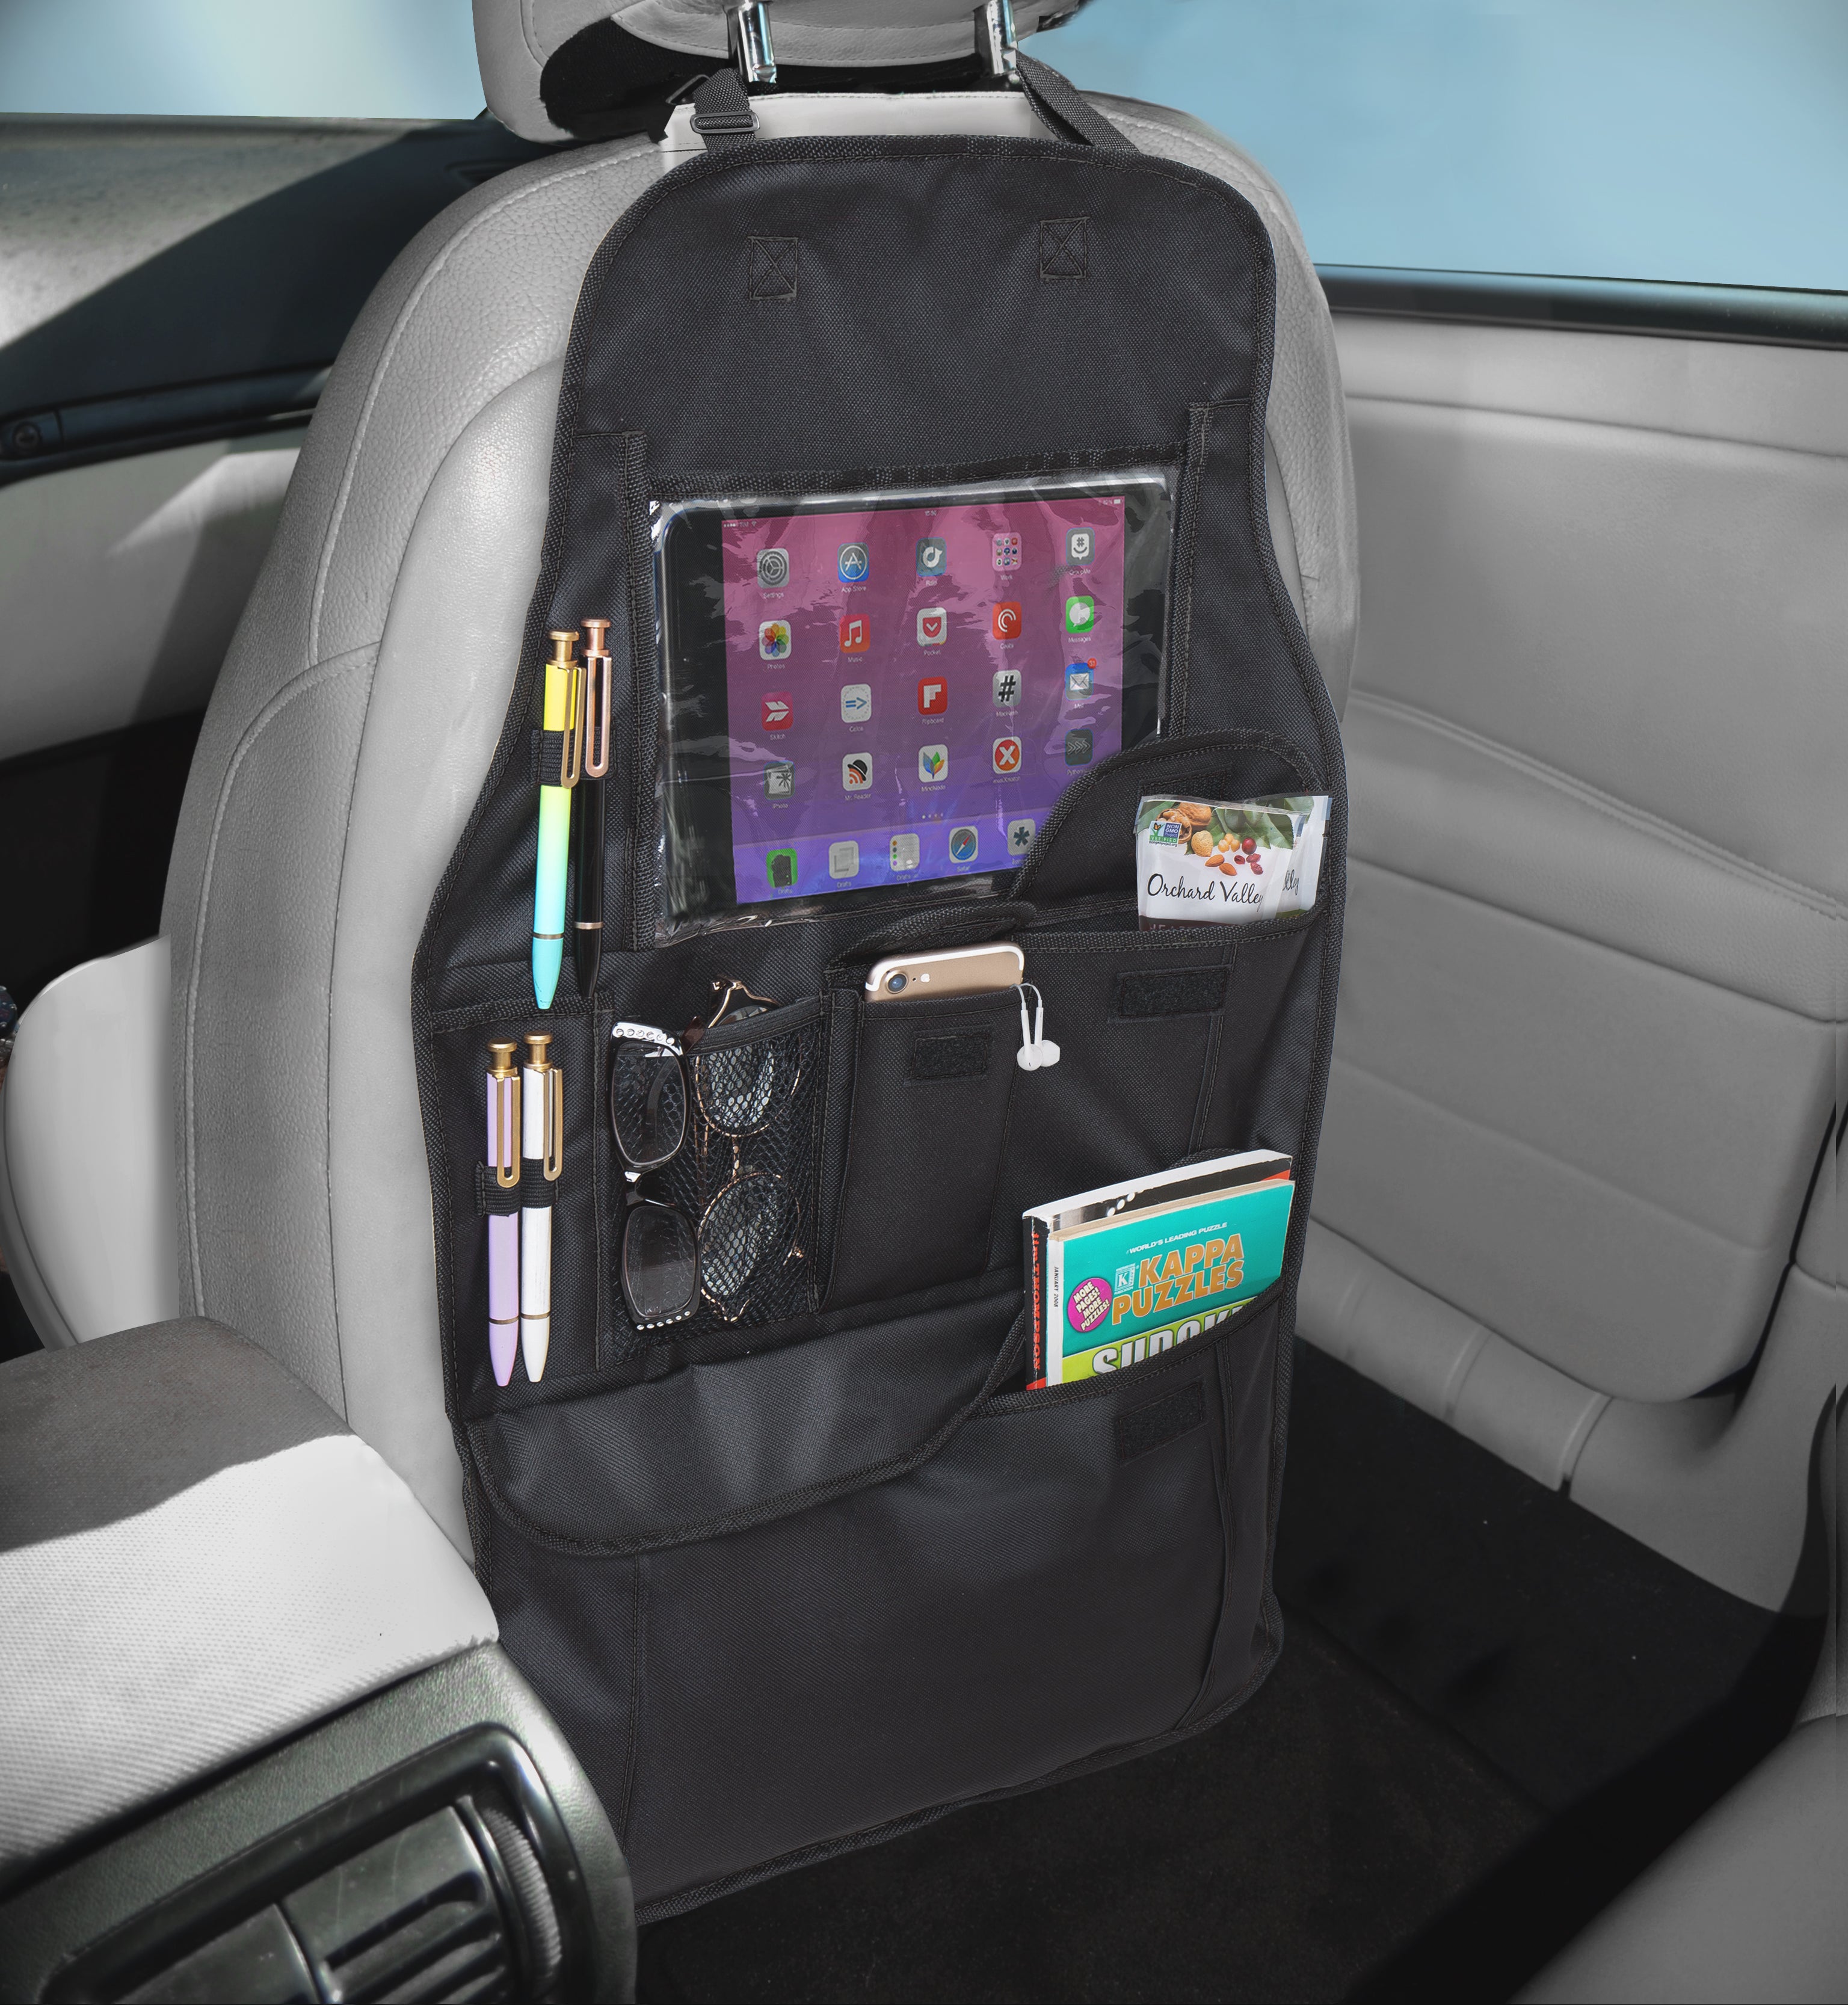 Backseat Tablet/Storage Car Organizer - Black - Smart Design® 3